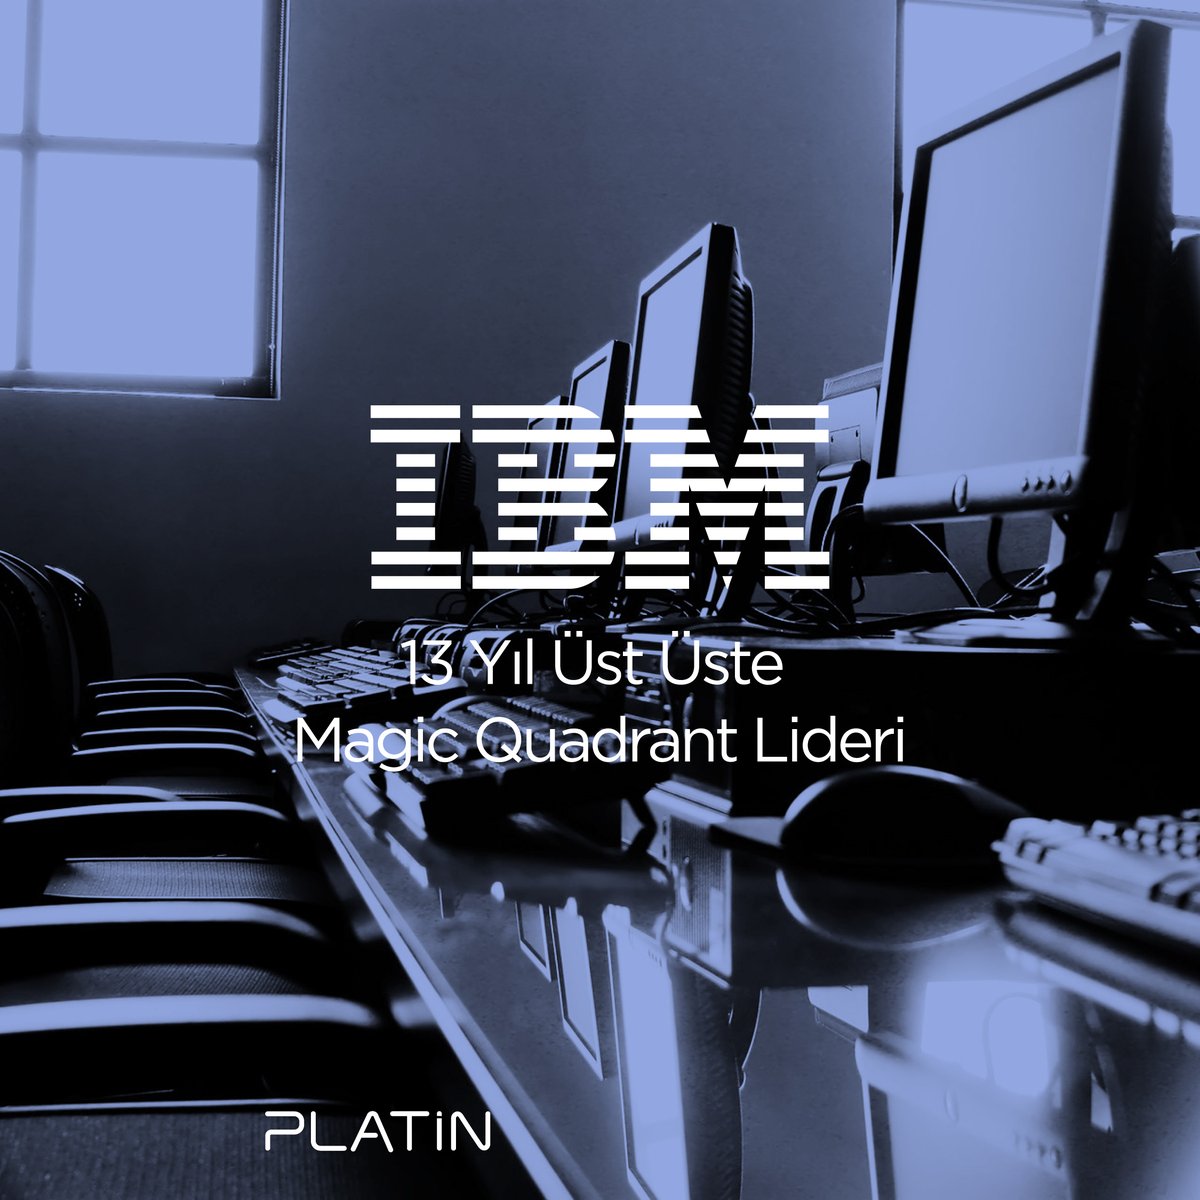 Gartner, 2022 Güvenlik Bilgi ve Olay Yönetimi(SIEM) alanında #IBM 'yi 13 yıl üst üste #MagicQuadrant lideri olarak adlandırdı. #PlatinBilişim olarak IBM’nin çözüm ortağı olmanın sağladığı değerleri takdir ediyoruz.